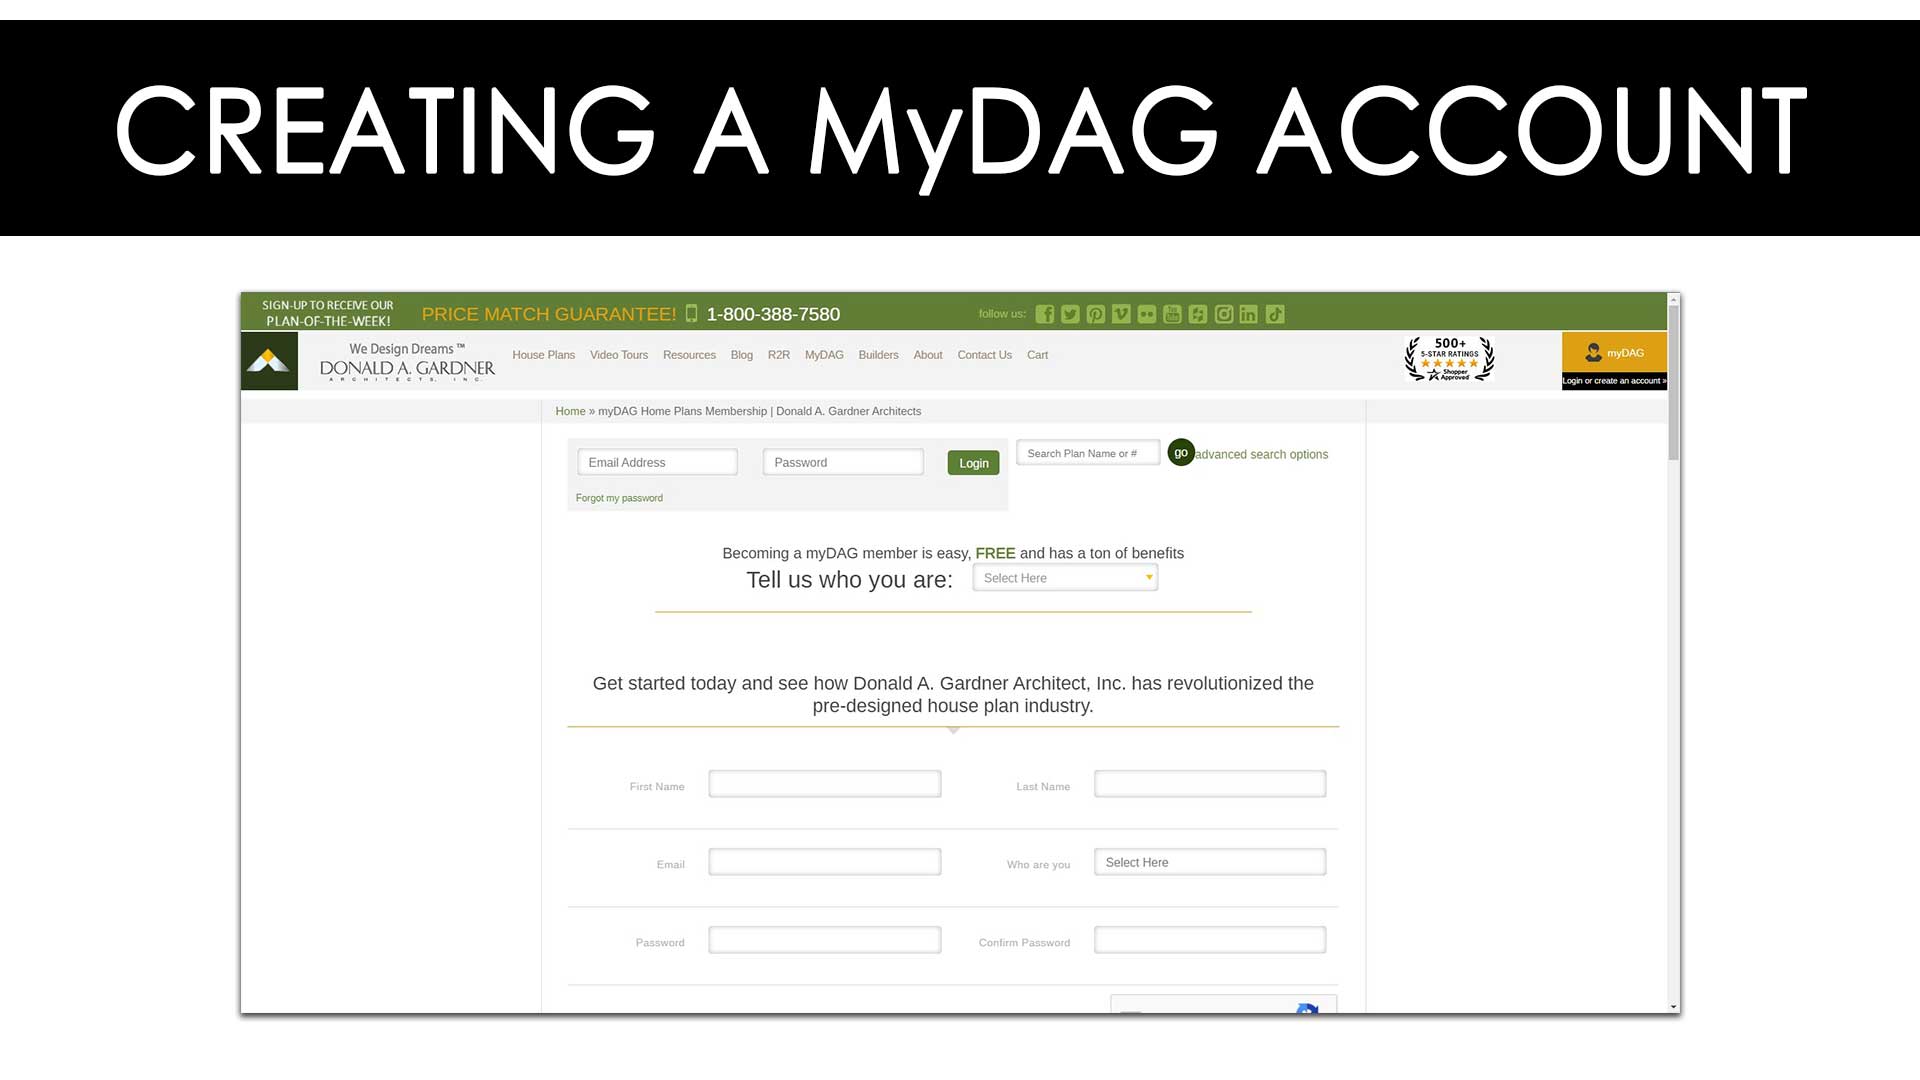 How to create a myDAG account